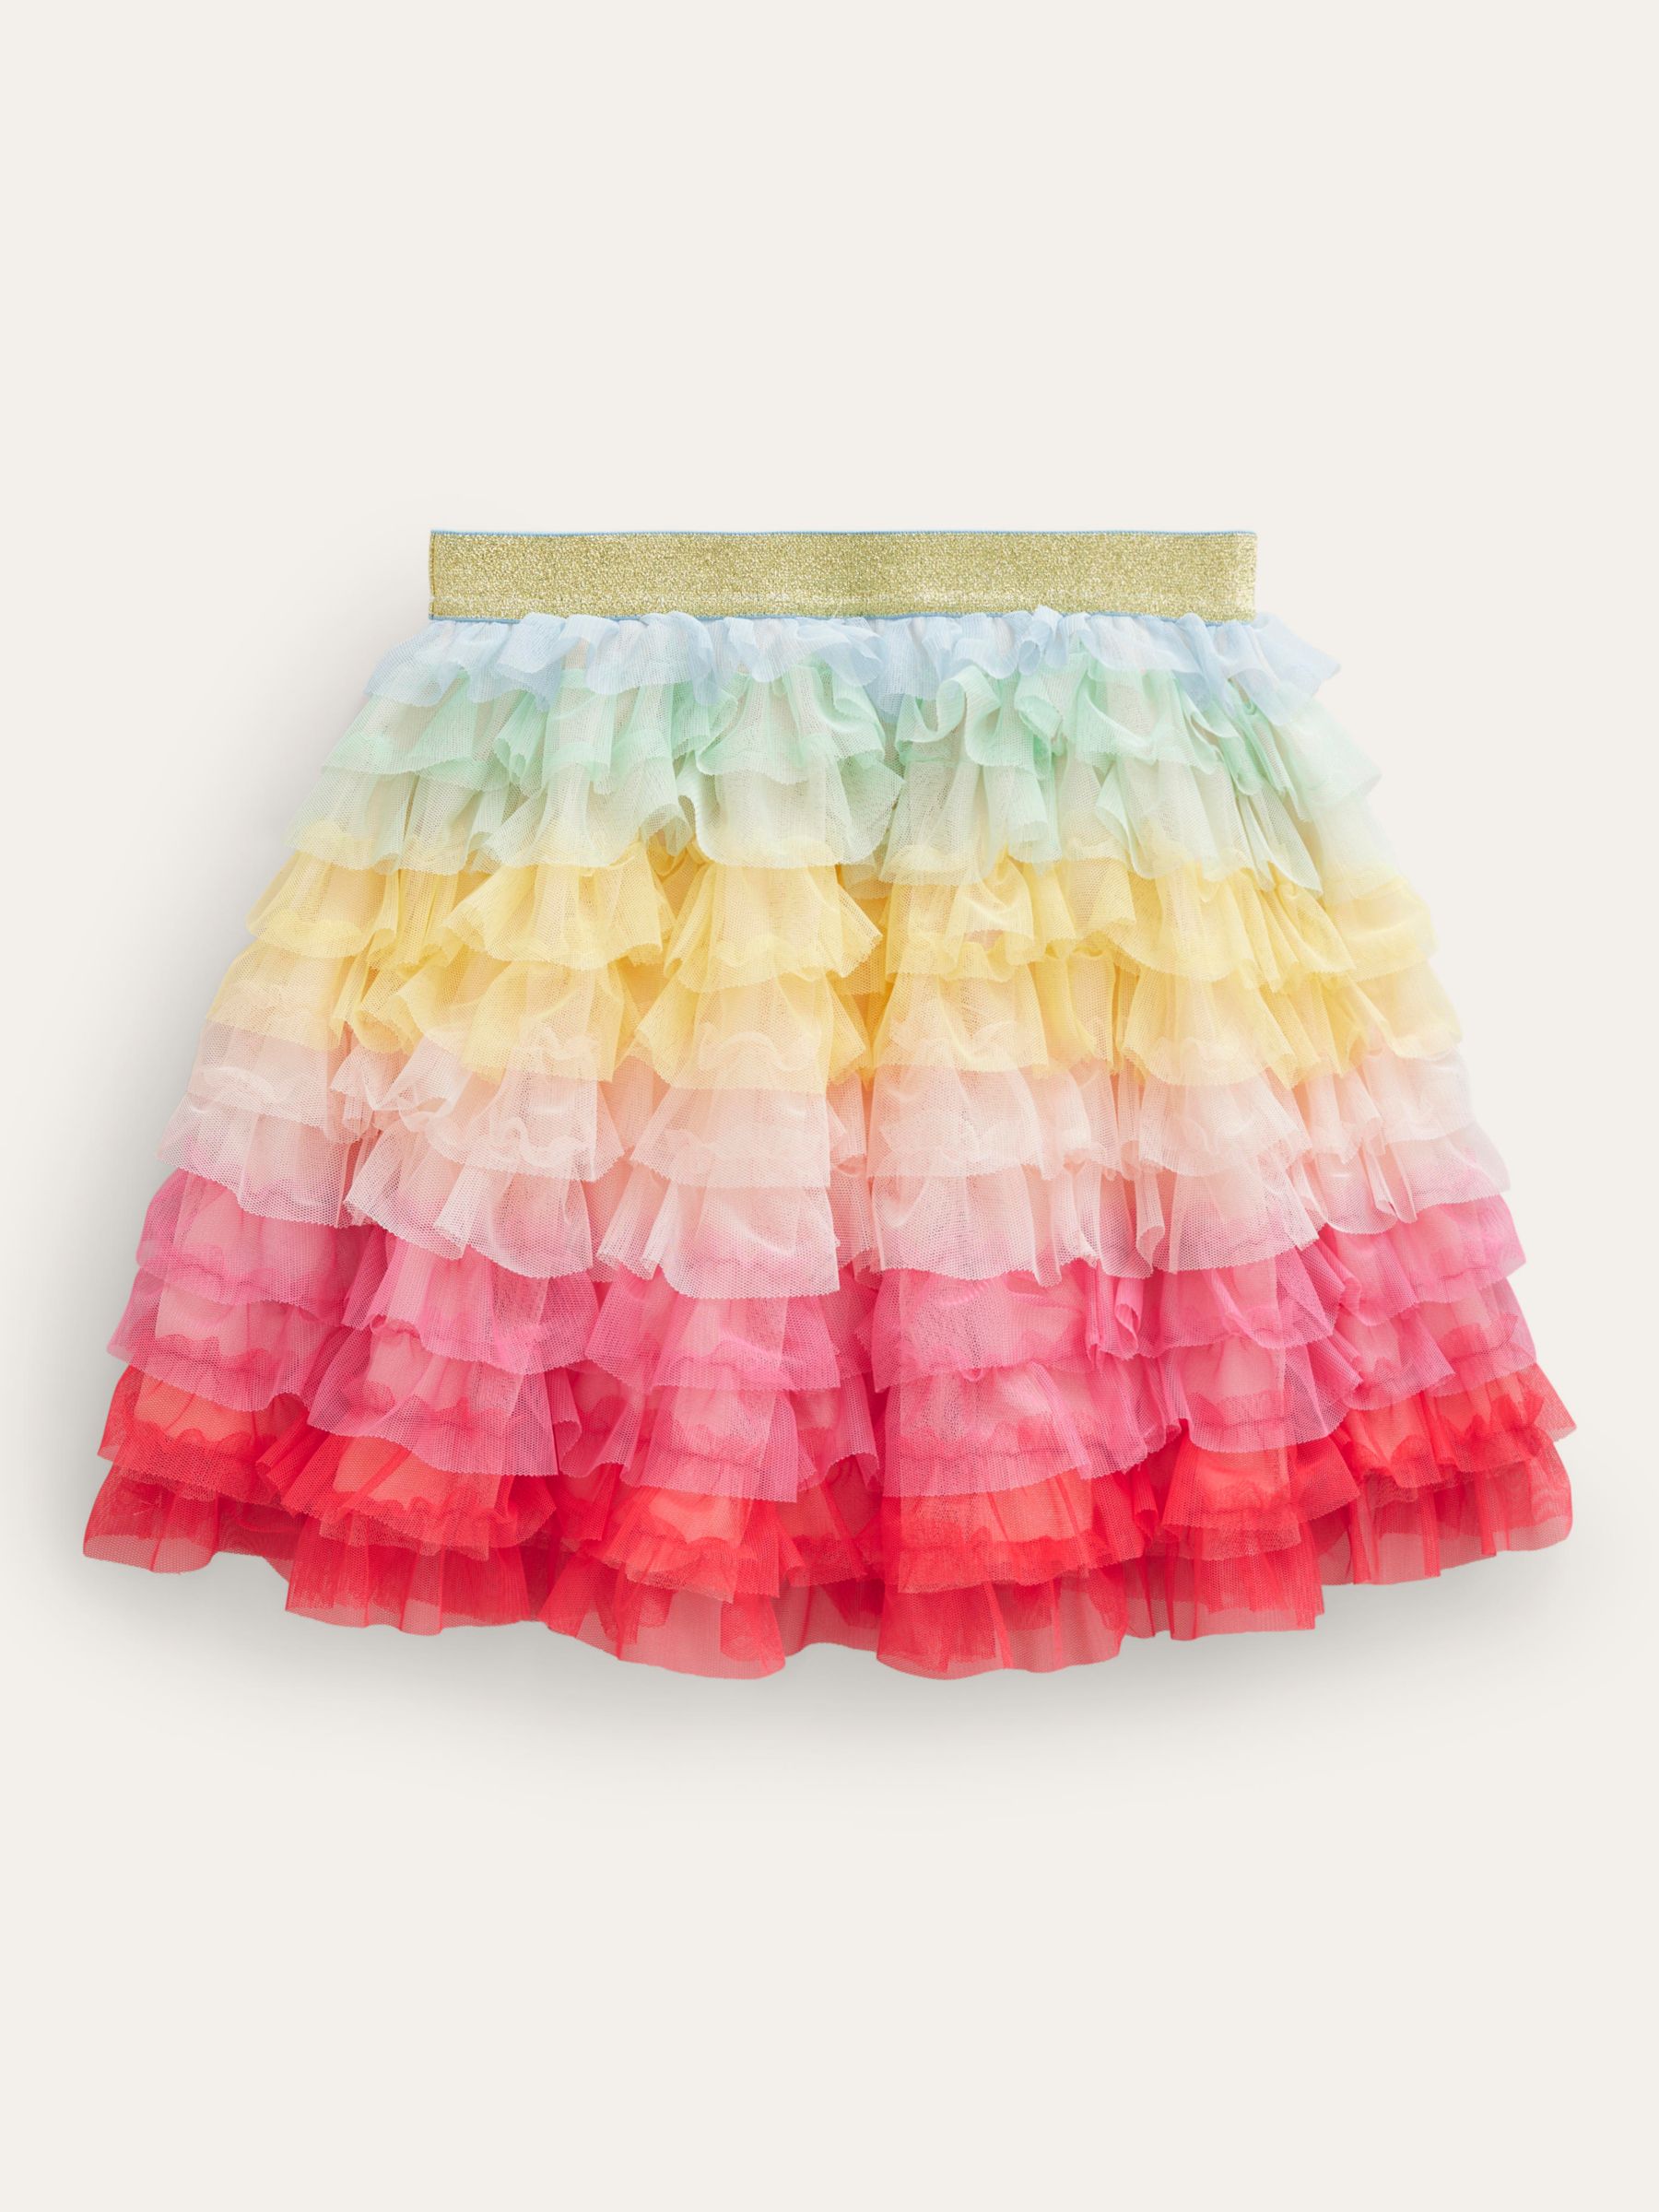 Mini Boden Kids' Rainbow Tulle Ruffle Skirt, Multi, 2-3 years